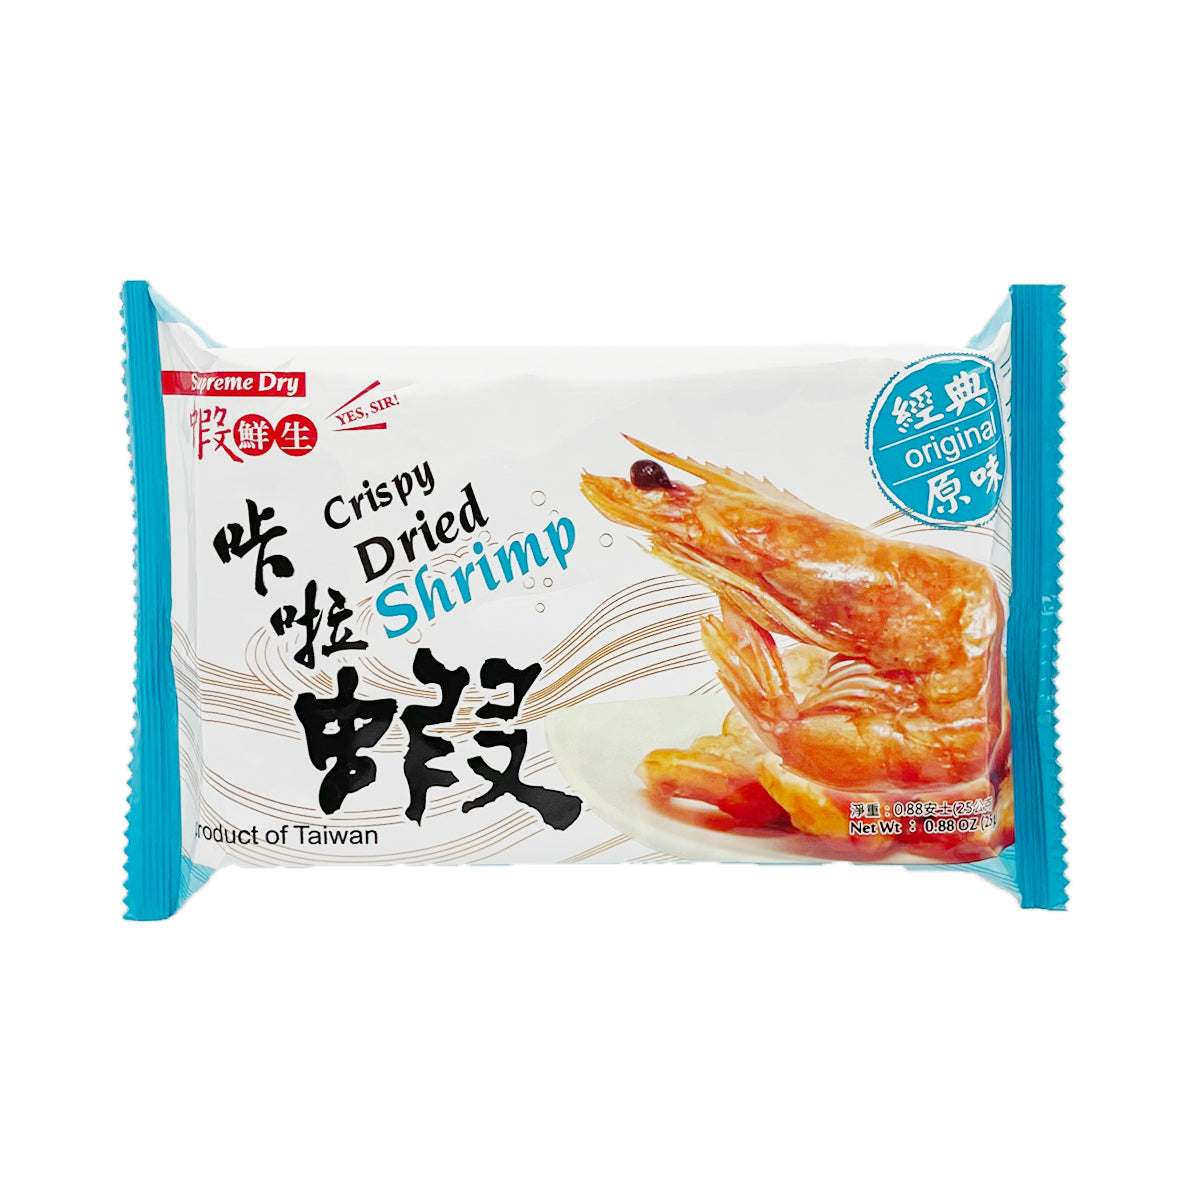 【I3 FRESH】Crispy Dried Shrimp (Original) 25g